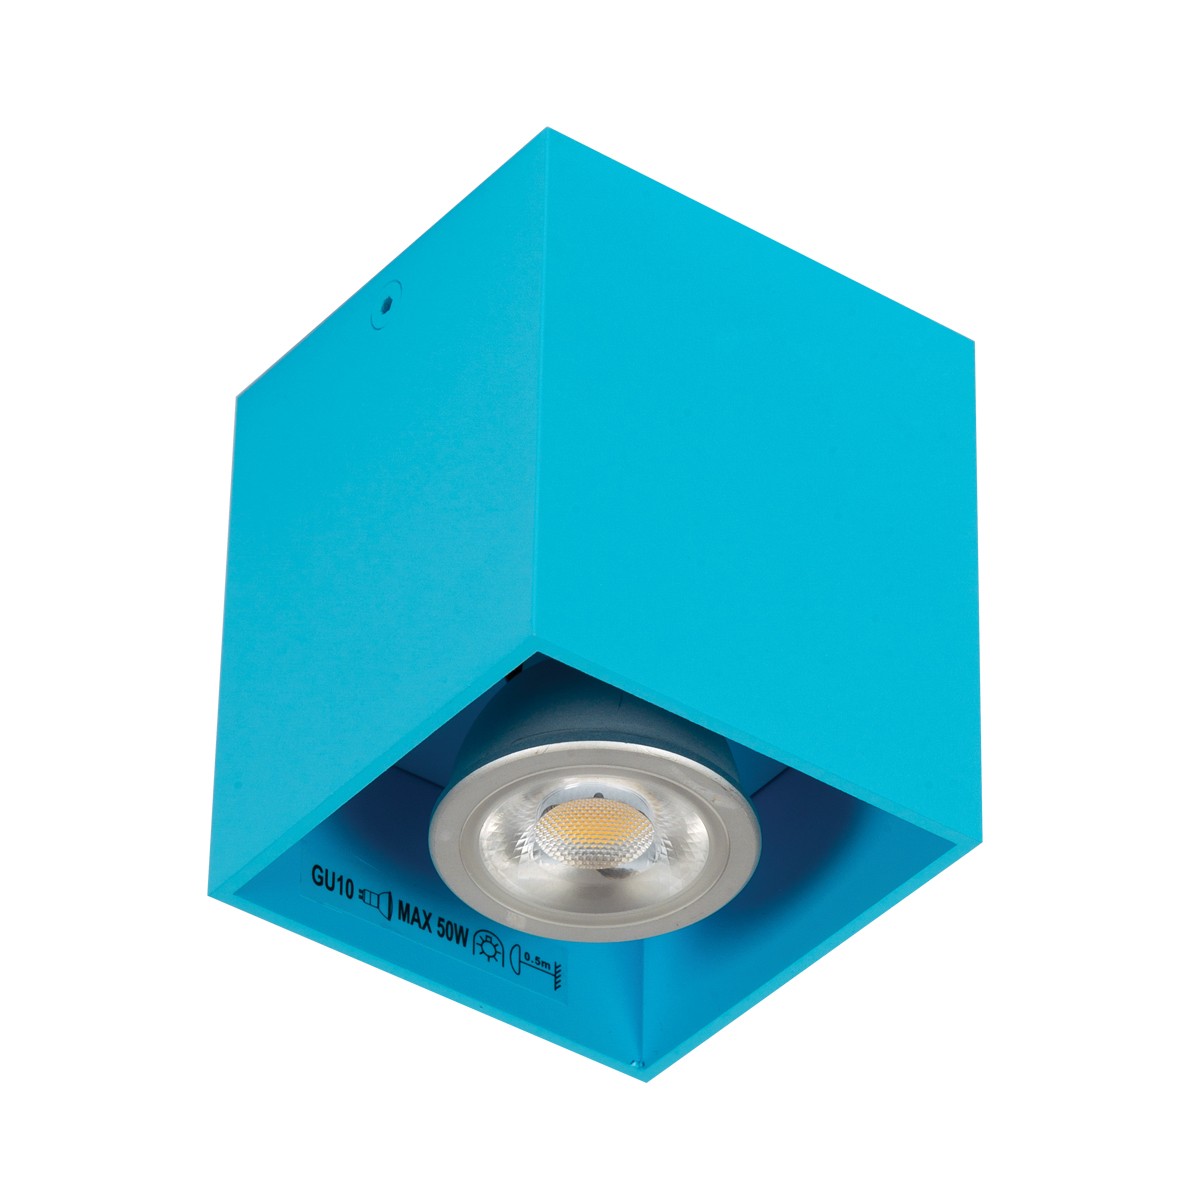 Φωτιστικό αλουμινίου οροφής κύβος  GU10 max 35W γαλάζιο 82χ82χ95 VK/03001/LB